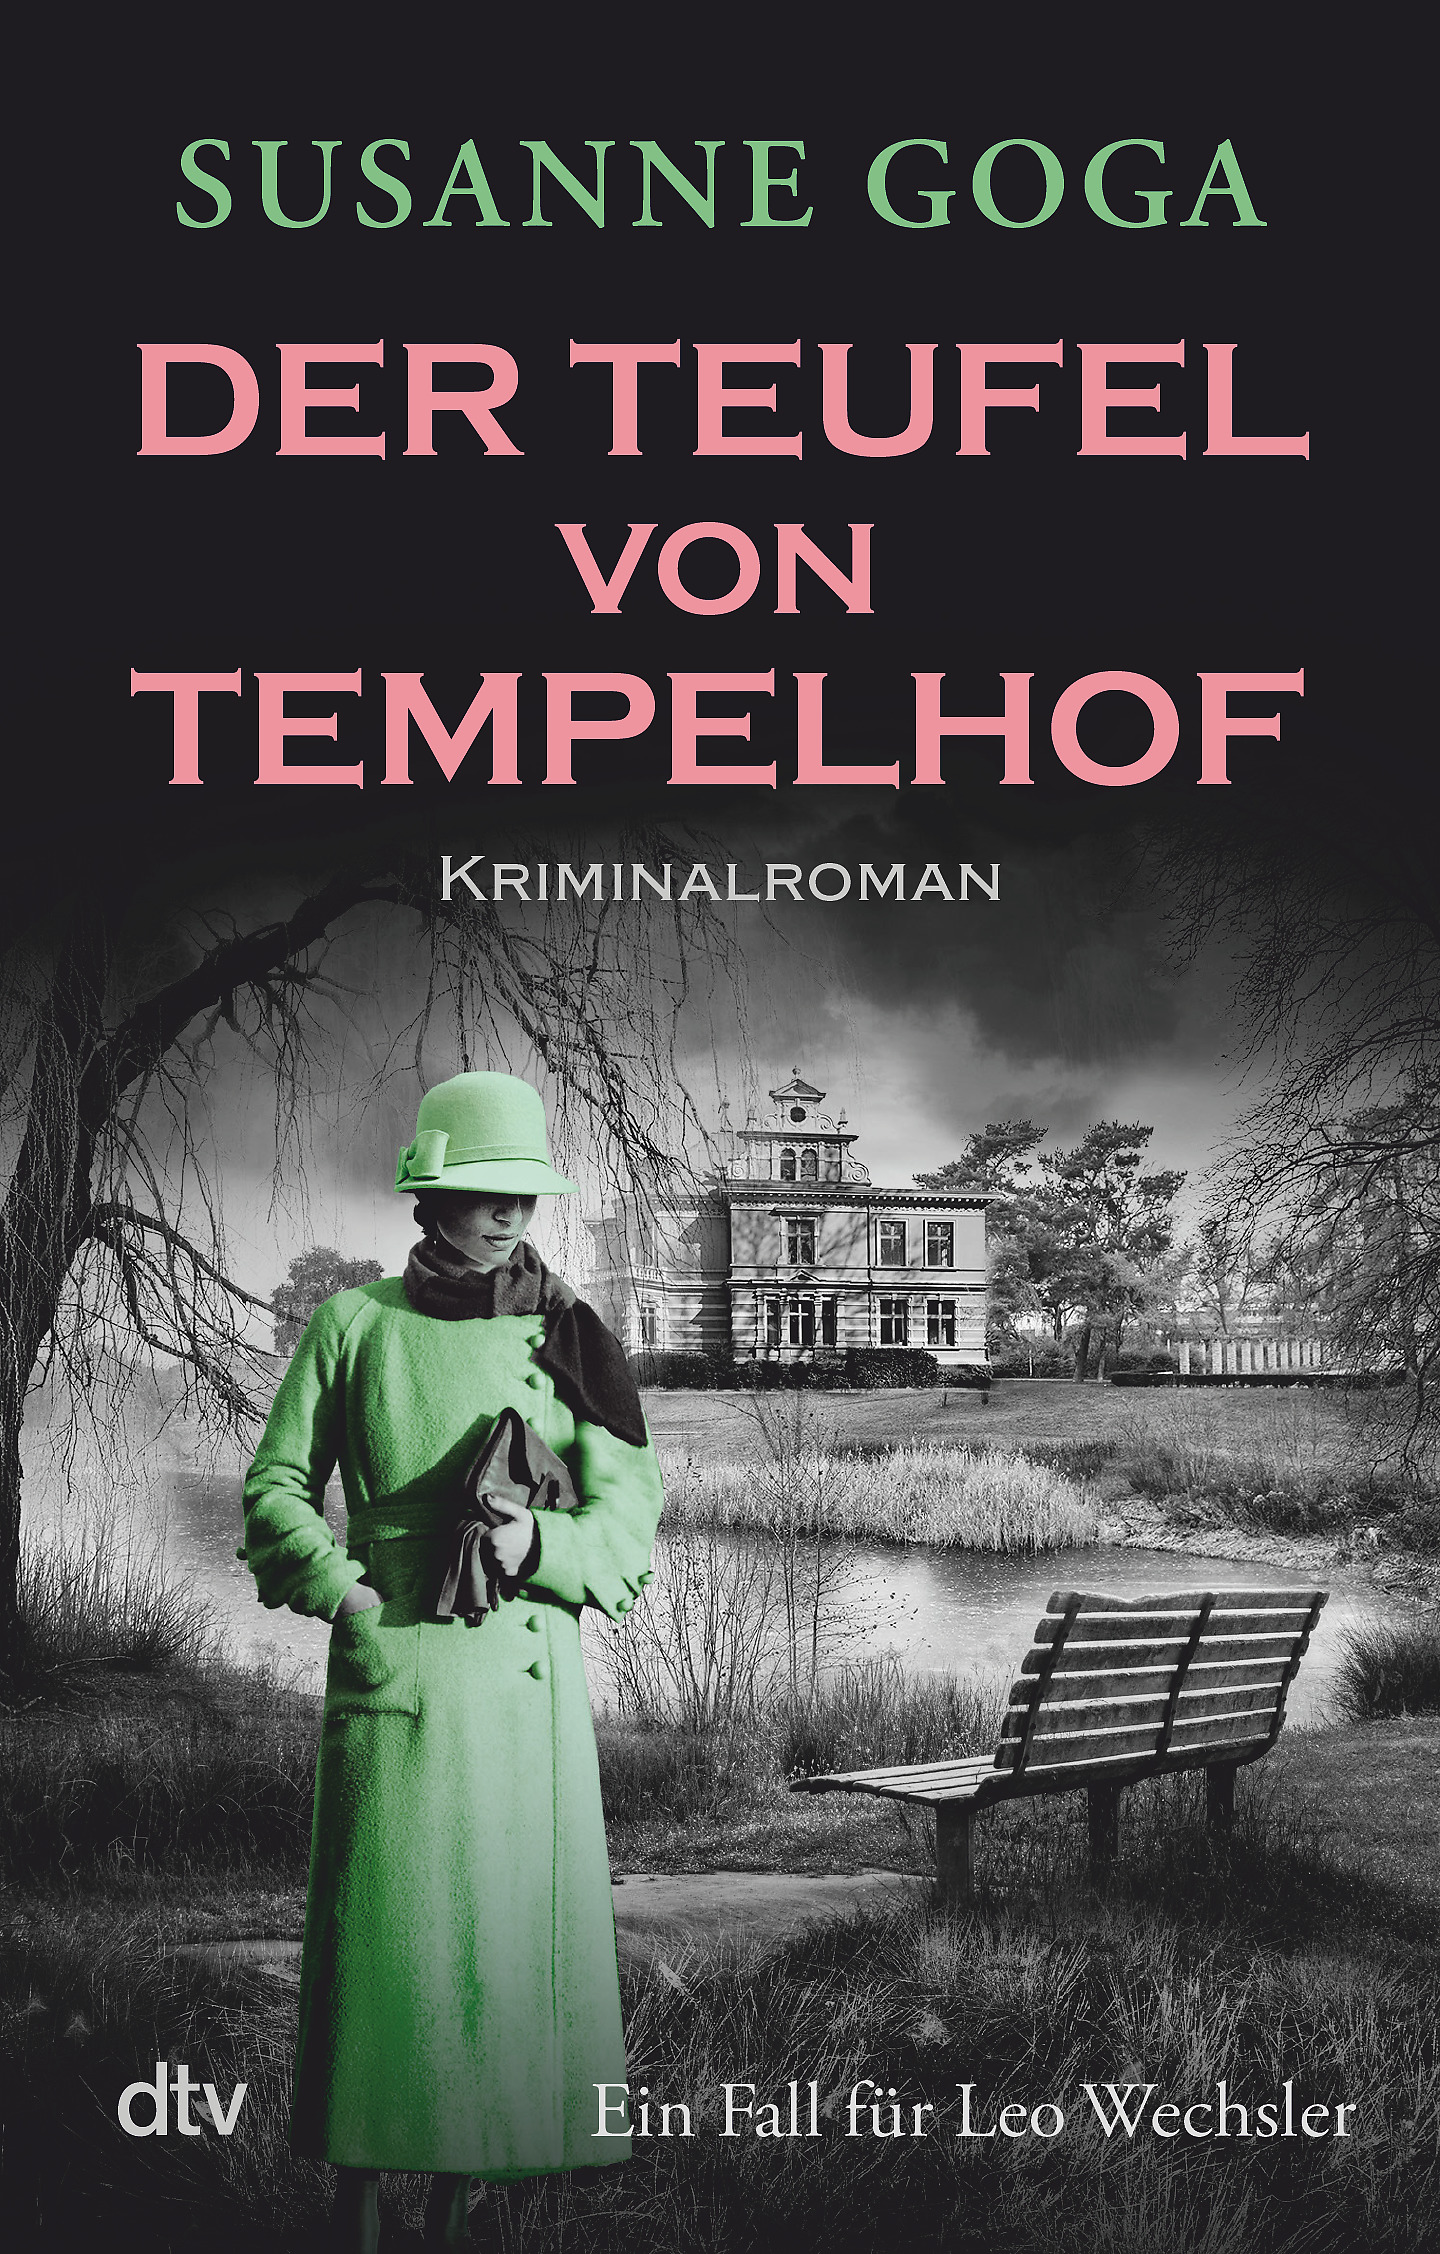 Susanne Goga - Der Teufel von Tempelhof (c) dtv